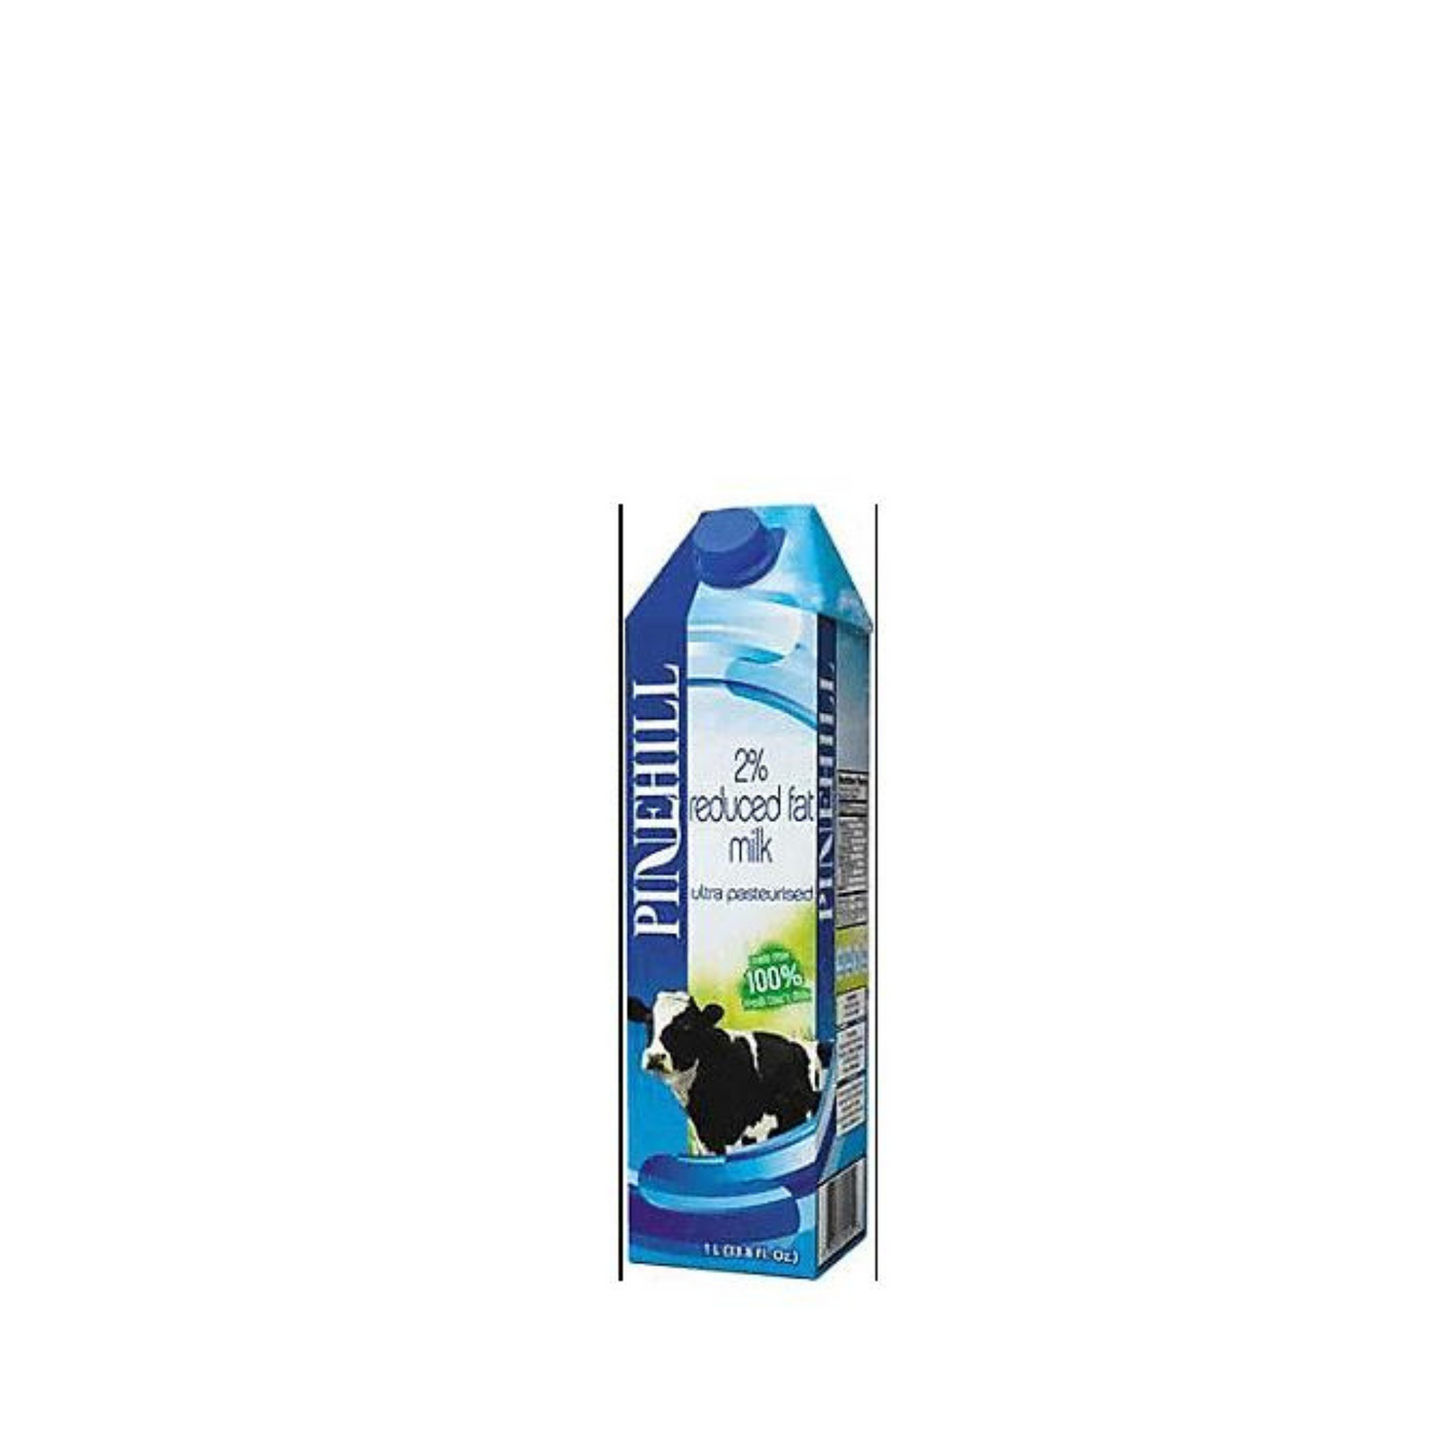 PineHill Dairy 2% Reduced Fat Milk -1L